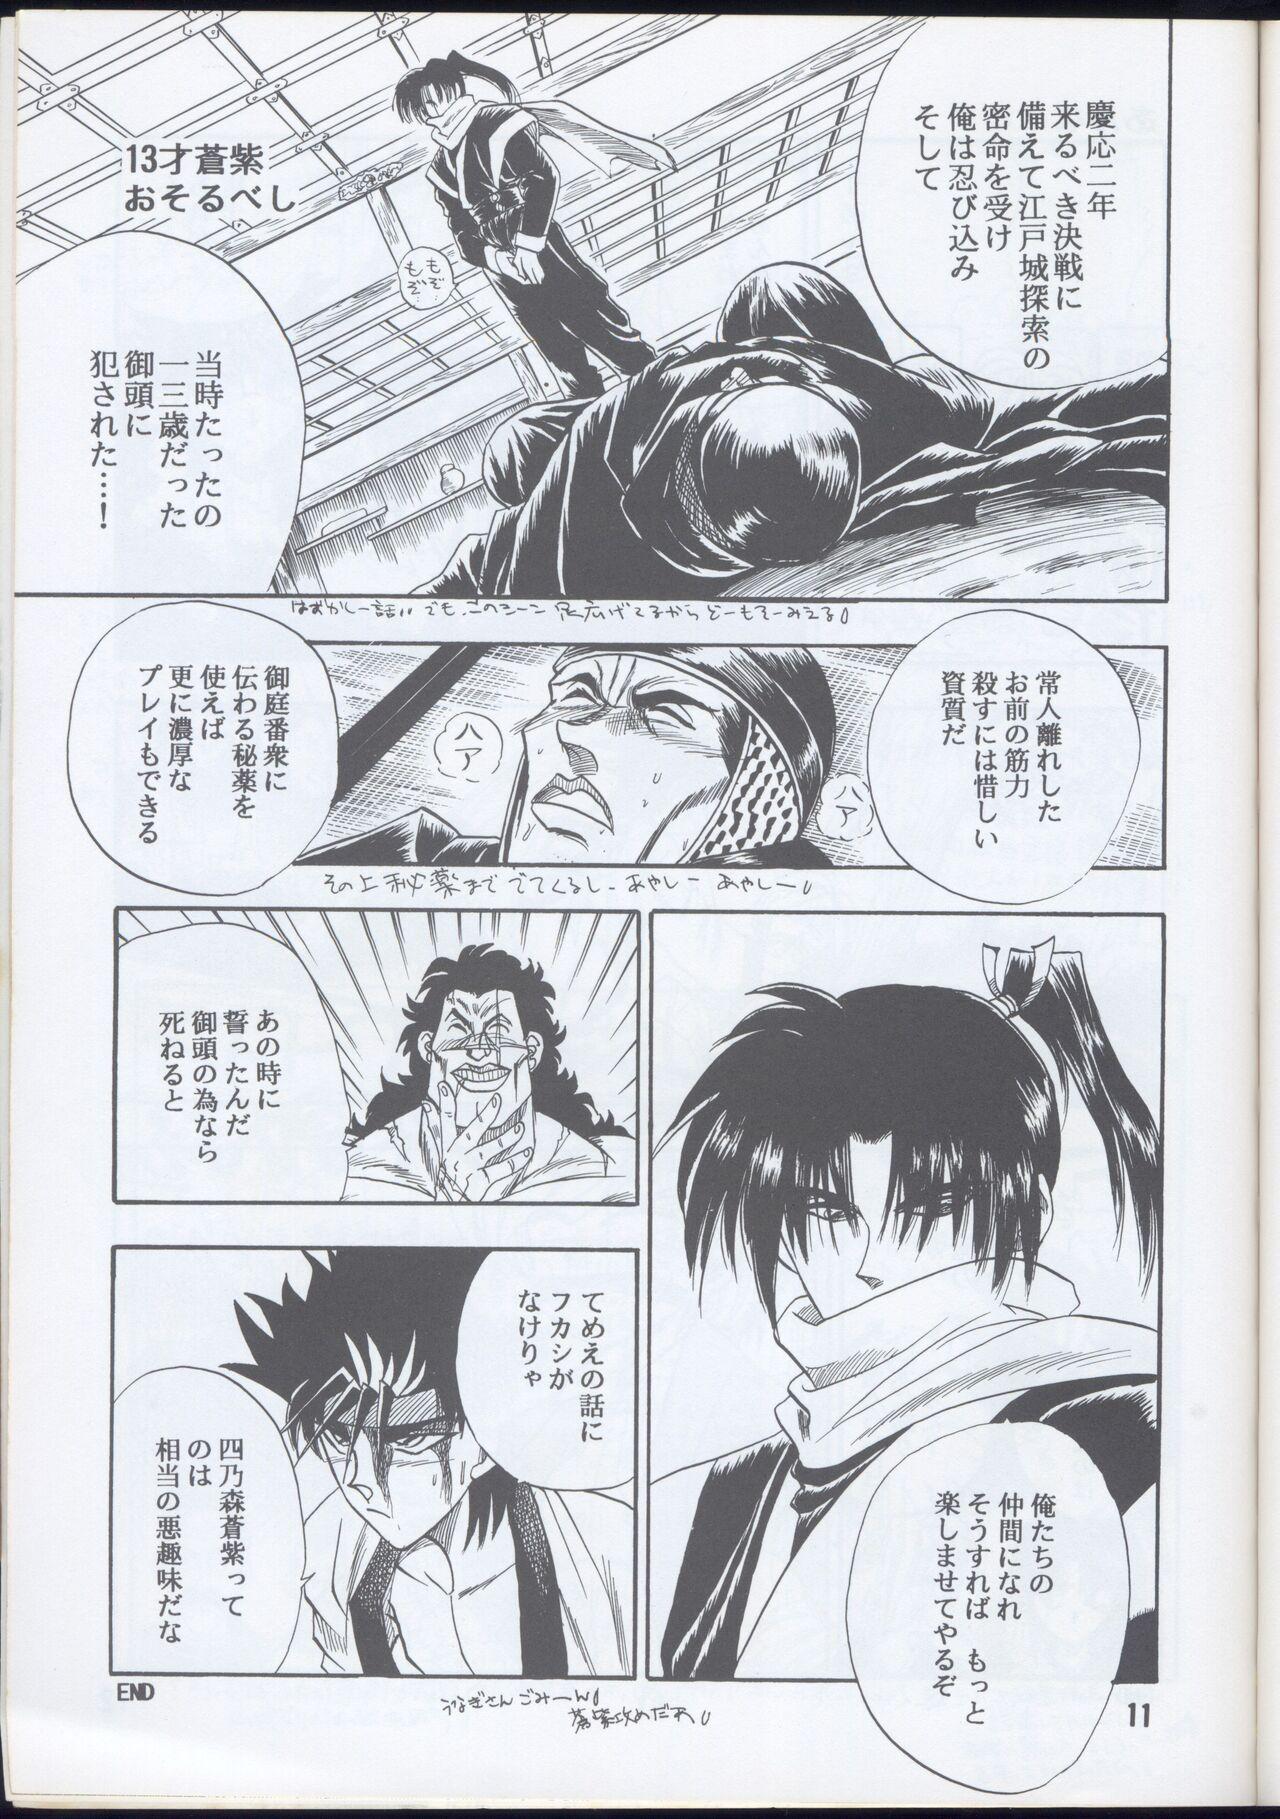 Money Rurouni Kenshin Oro! 2 - Rurouni kenshin | samurai x Flaquita - Page 11